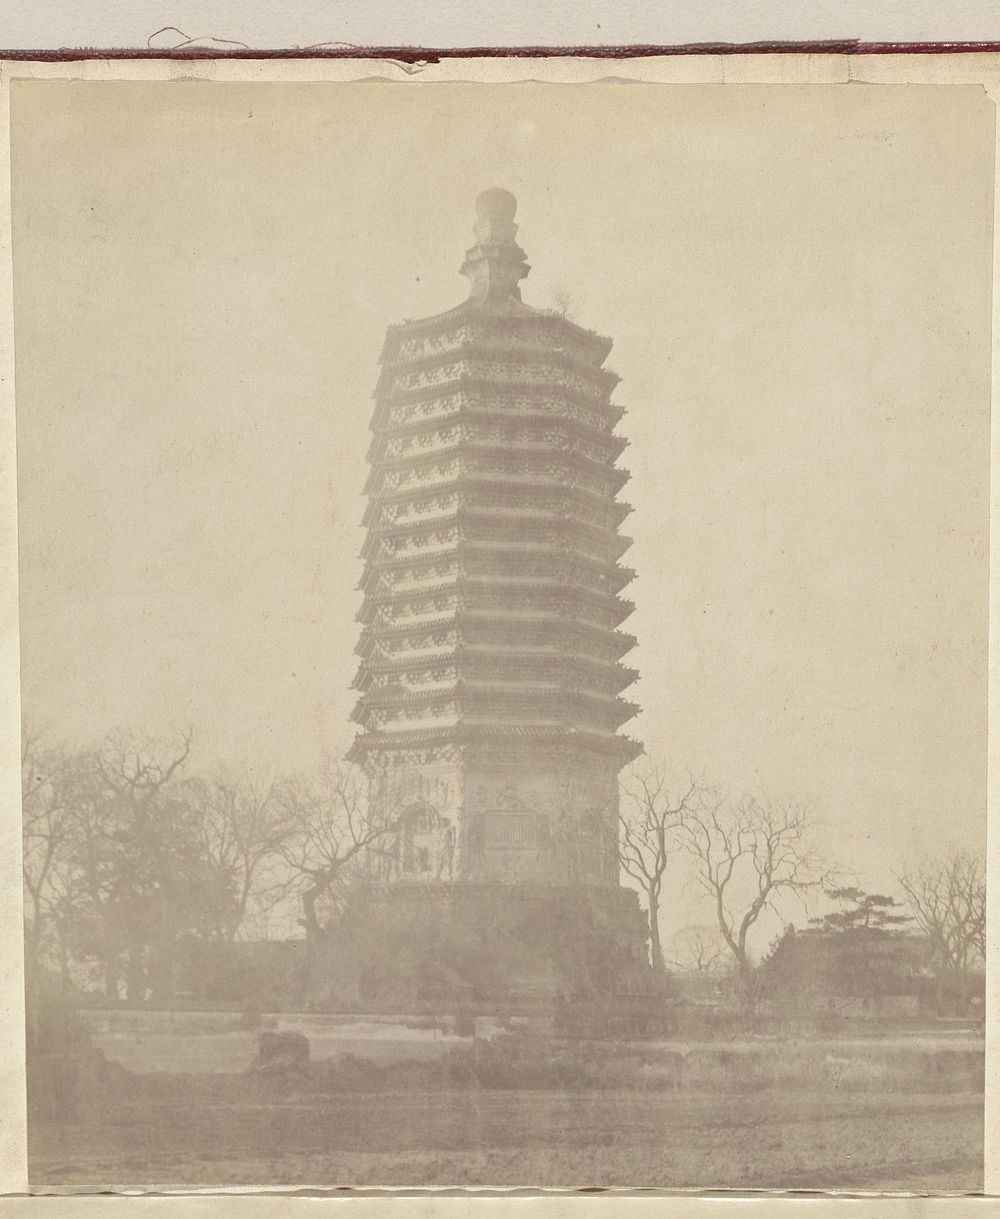 Pagode van de tempel van Tianning, Beijing (c. 1879 - c. 1890) by anonymous